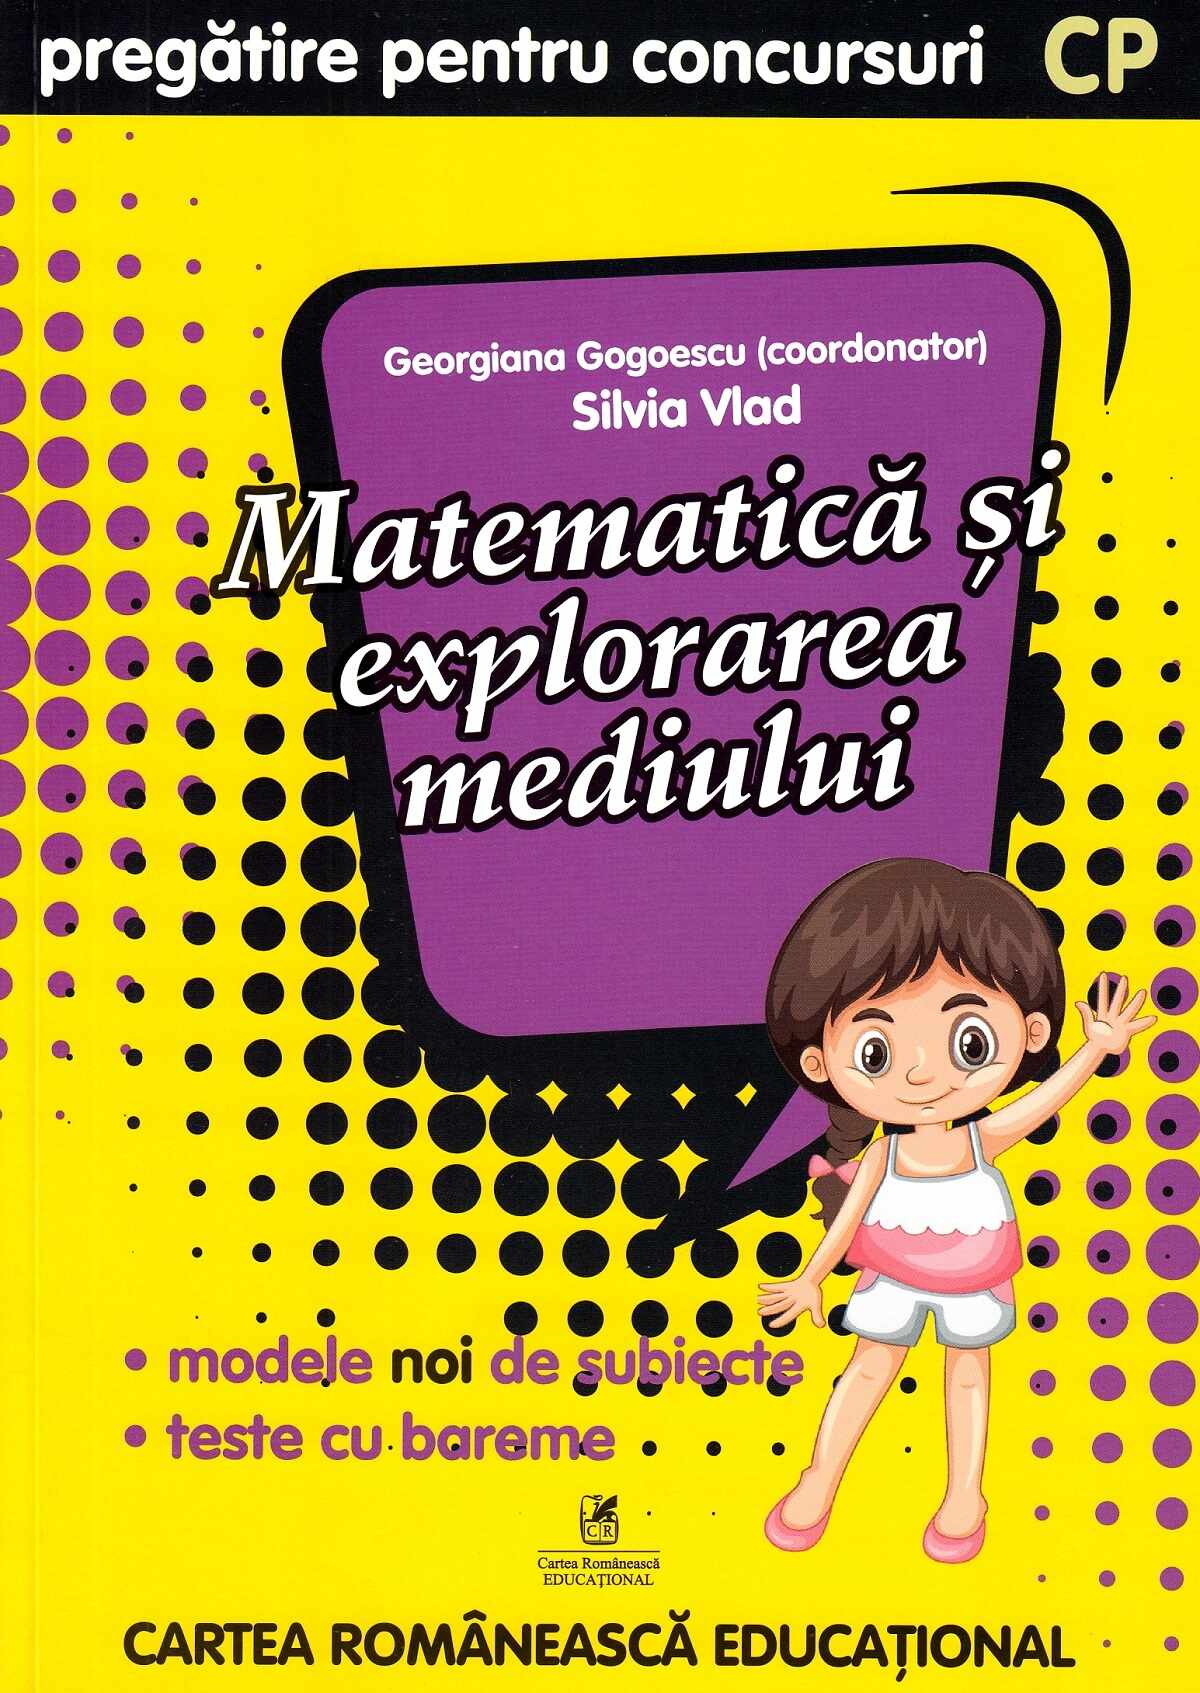 Matematica si explorarea mediului - Clasa pregatitoare - Pregatire pentru concursuri | Georgiana Gogoescu